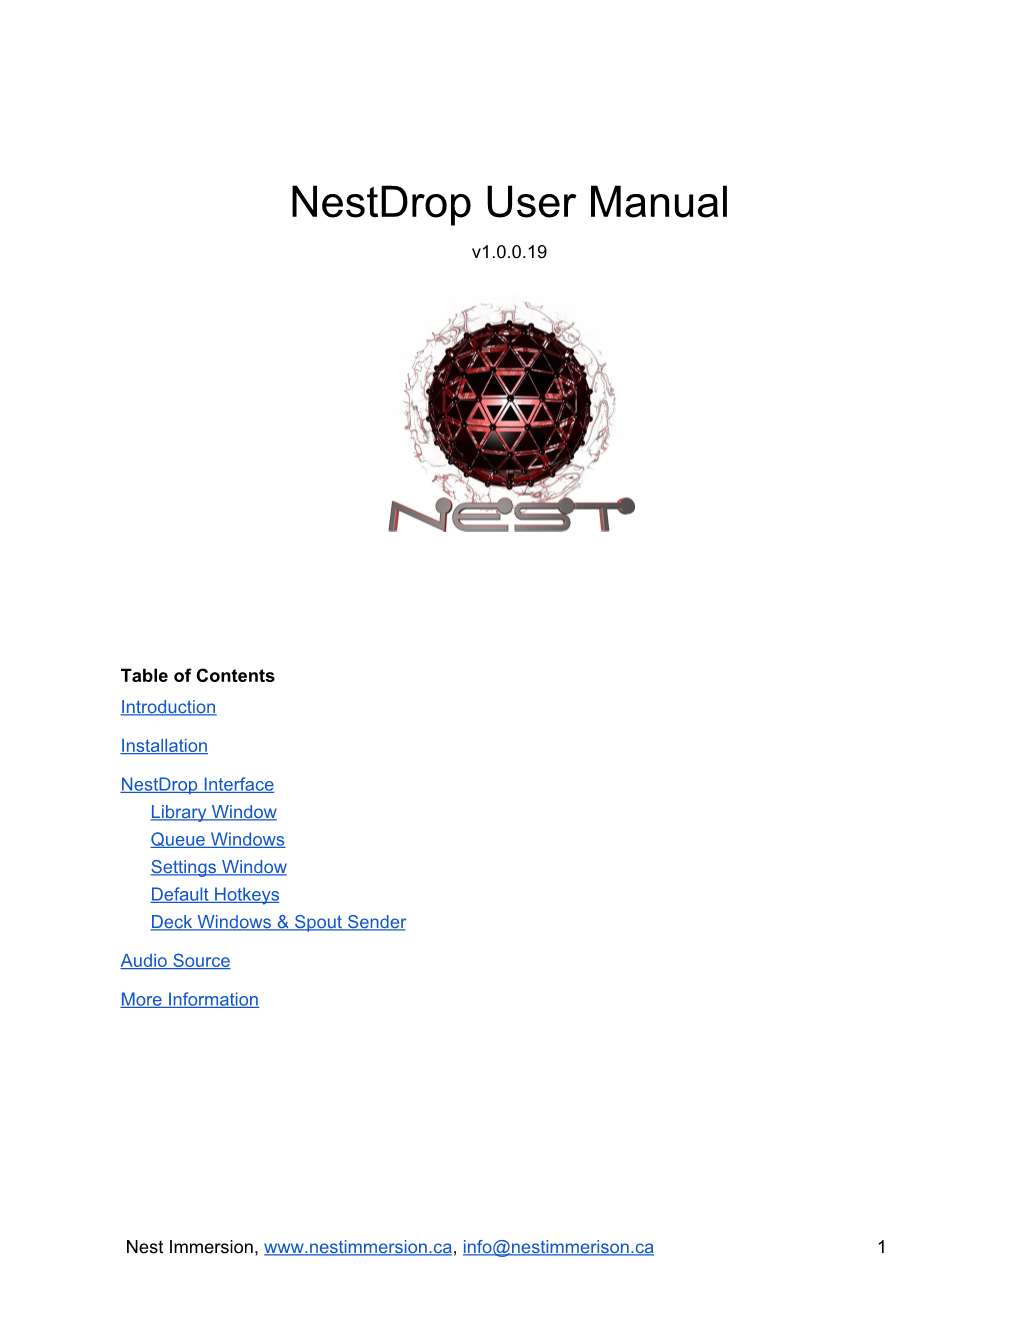 Nestdrop User Manual V1.0.0.19